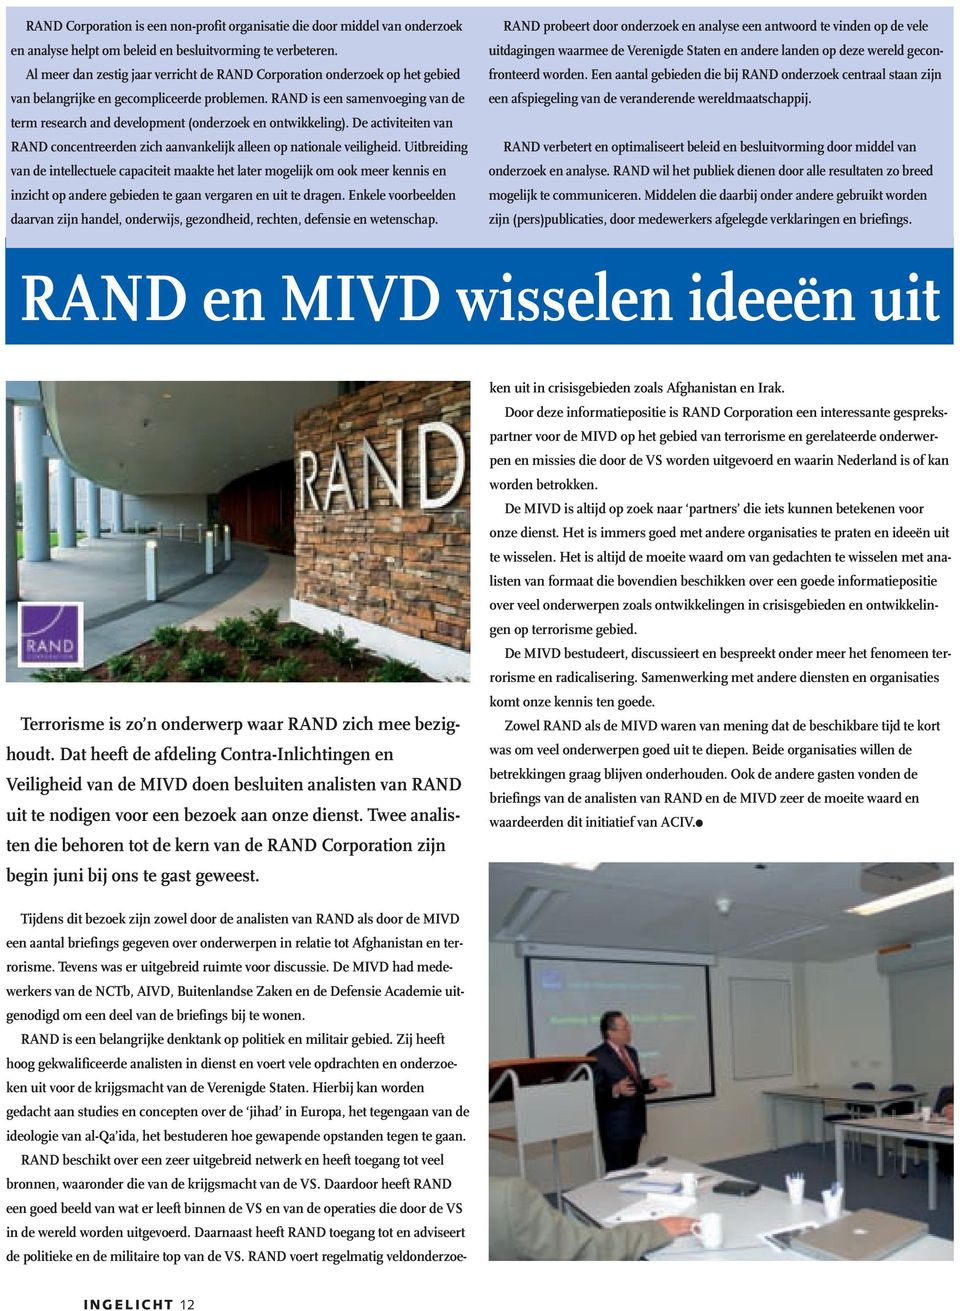 RAND is een samenvoeging van de term research and development (onderzoek en ontwikkeling). De activiteiten van RAND concentreerden zich aanvankelijk alleen op nationale veiligheid.